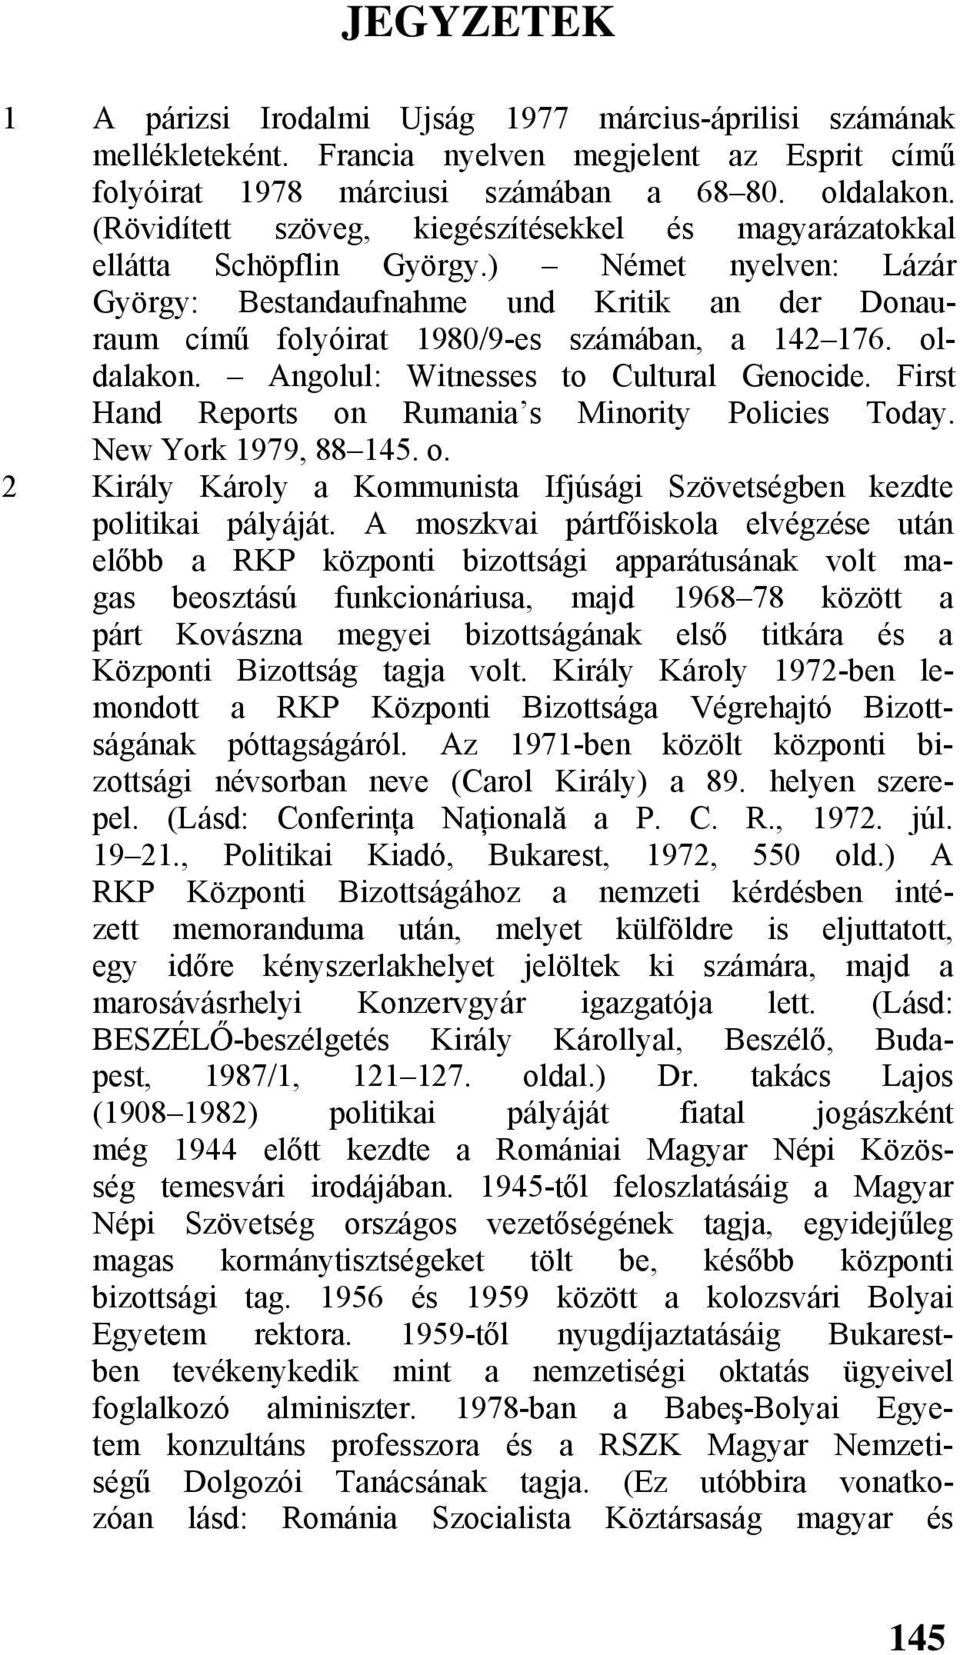 ) Német nyelven: Lázár György: Bestandaufnahme und Kritik an der Donauraum című folyóirat 1980/9-es számában, a 142 176. oldalakon. Angolul: Witnesses to Cultural Genocide.